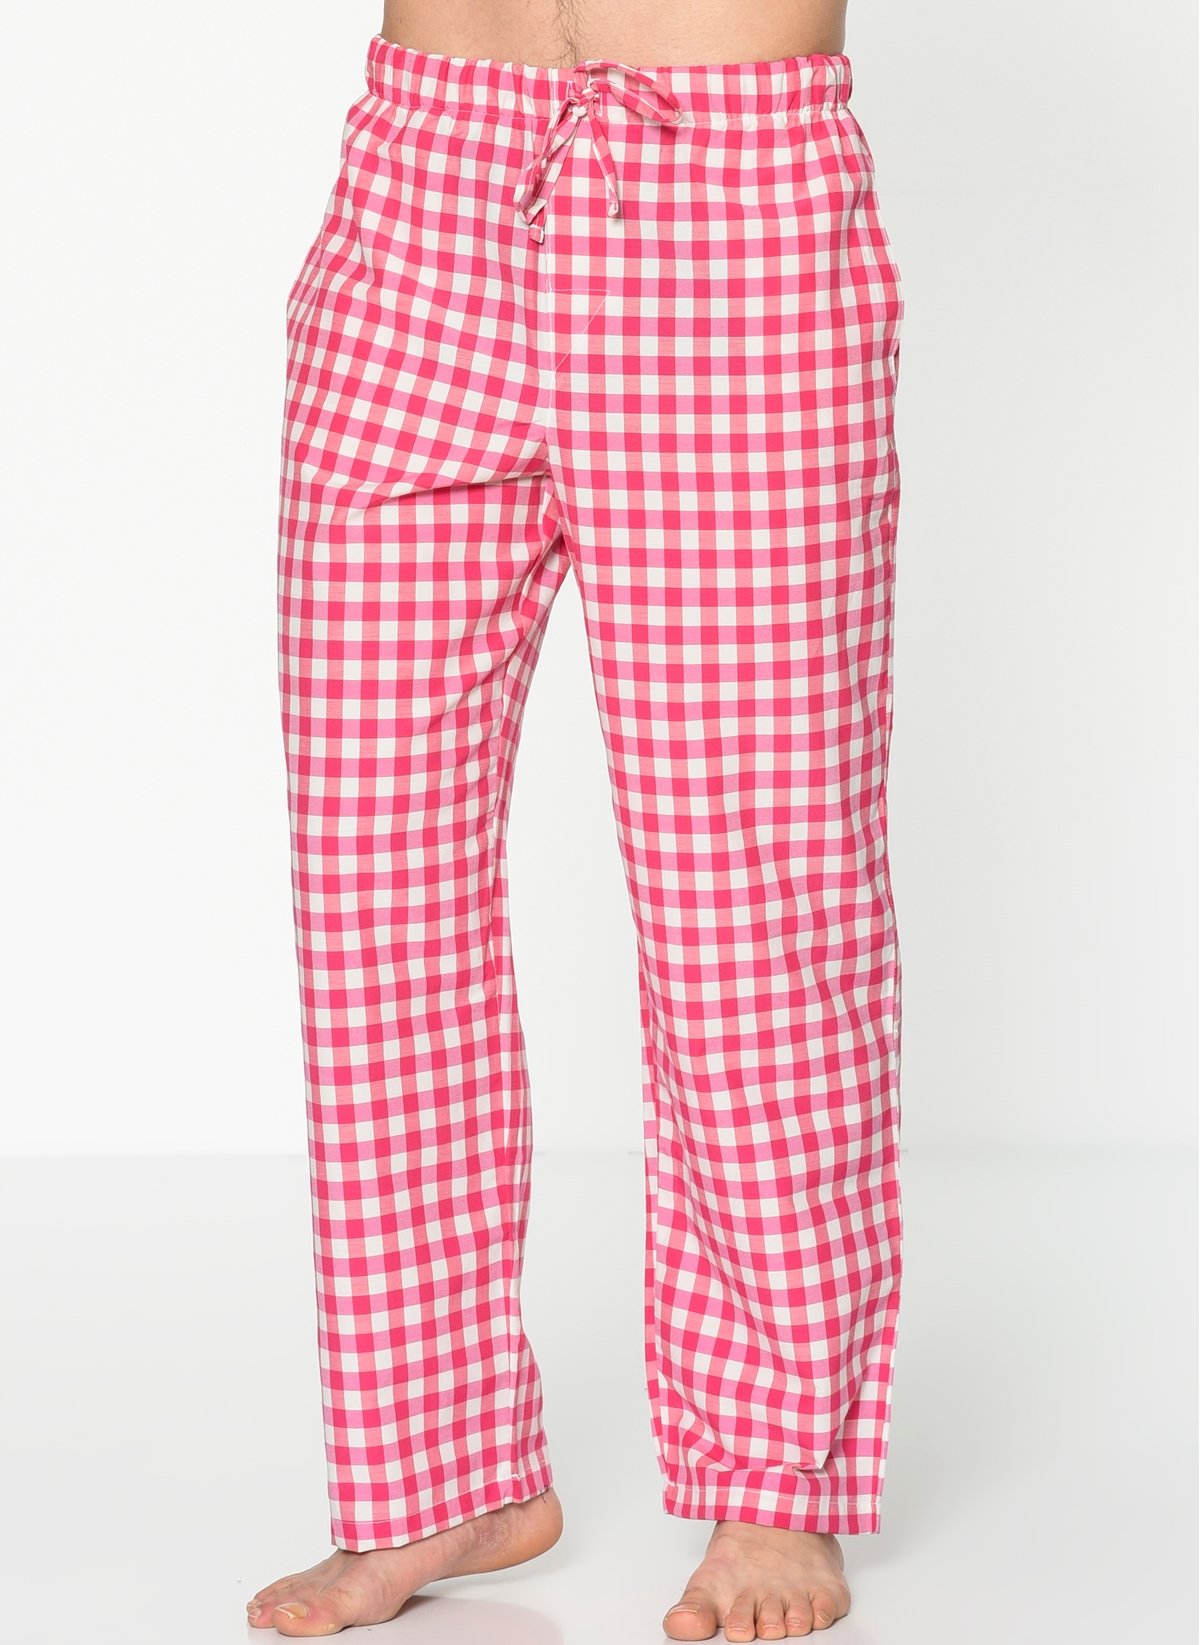 Herrmen Pembe beyaz kareli Pijama Pantolon